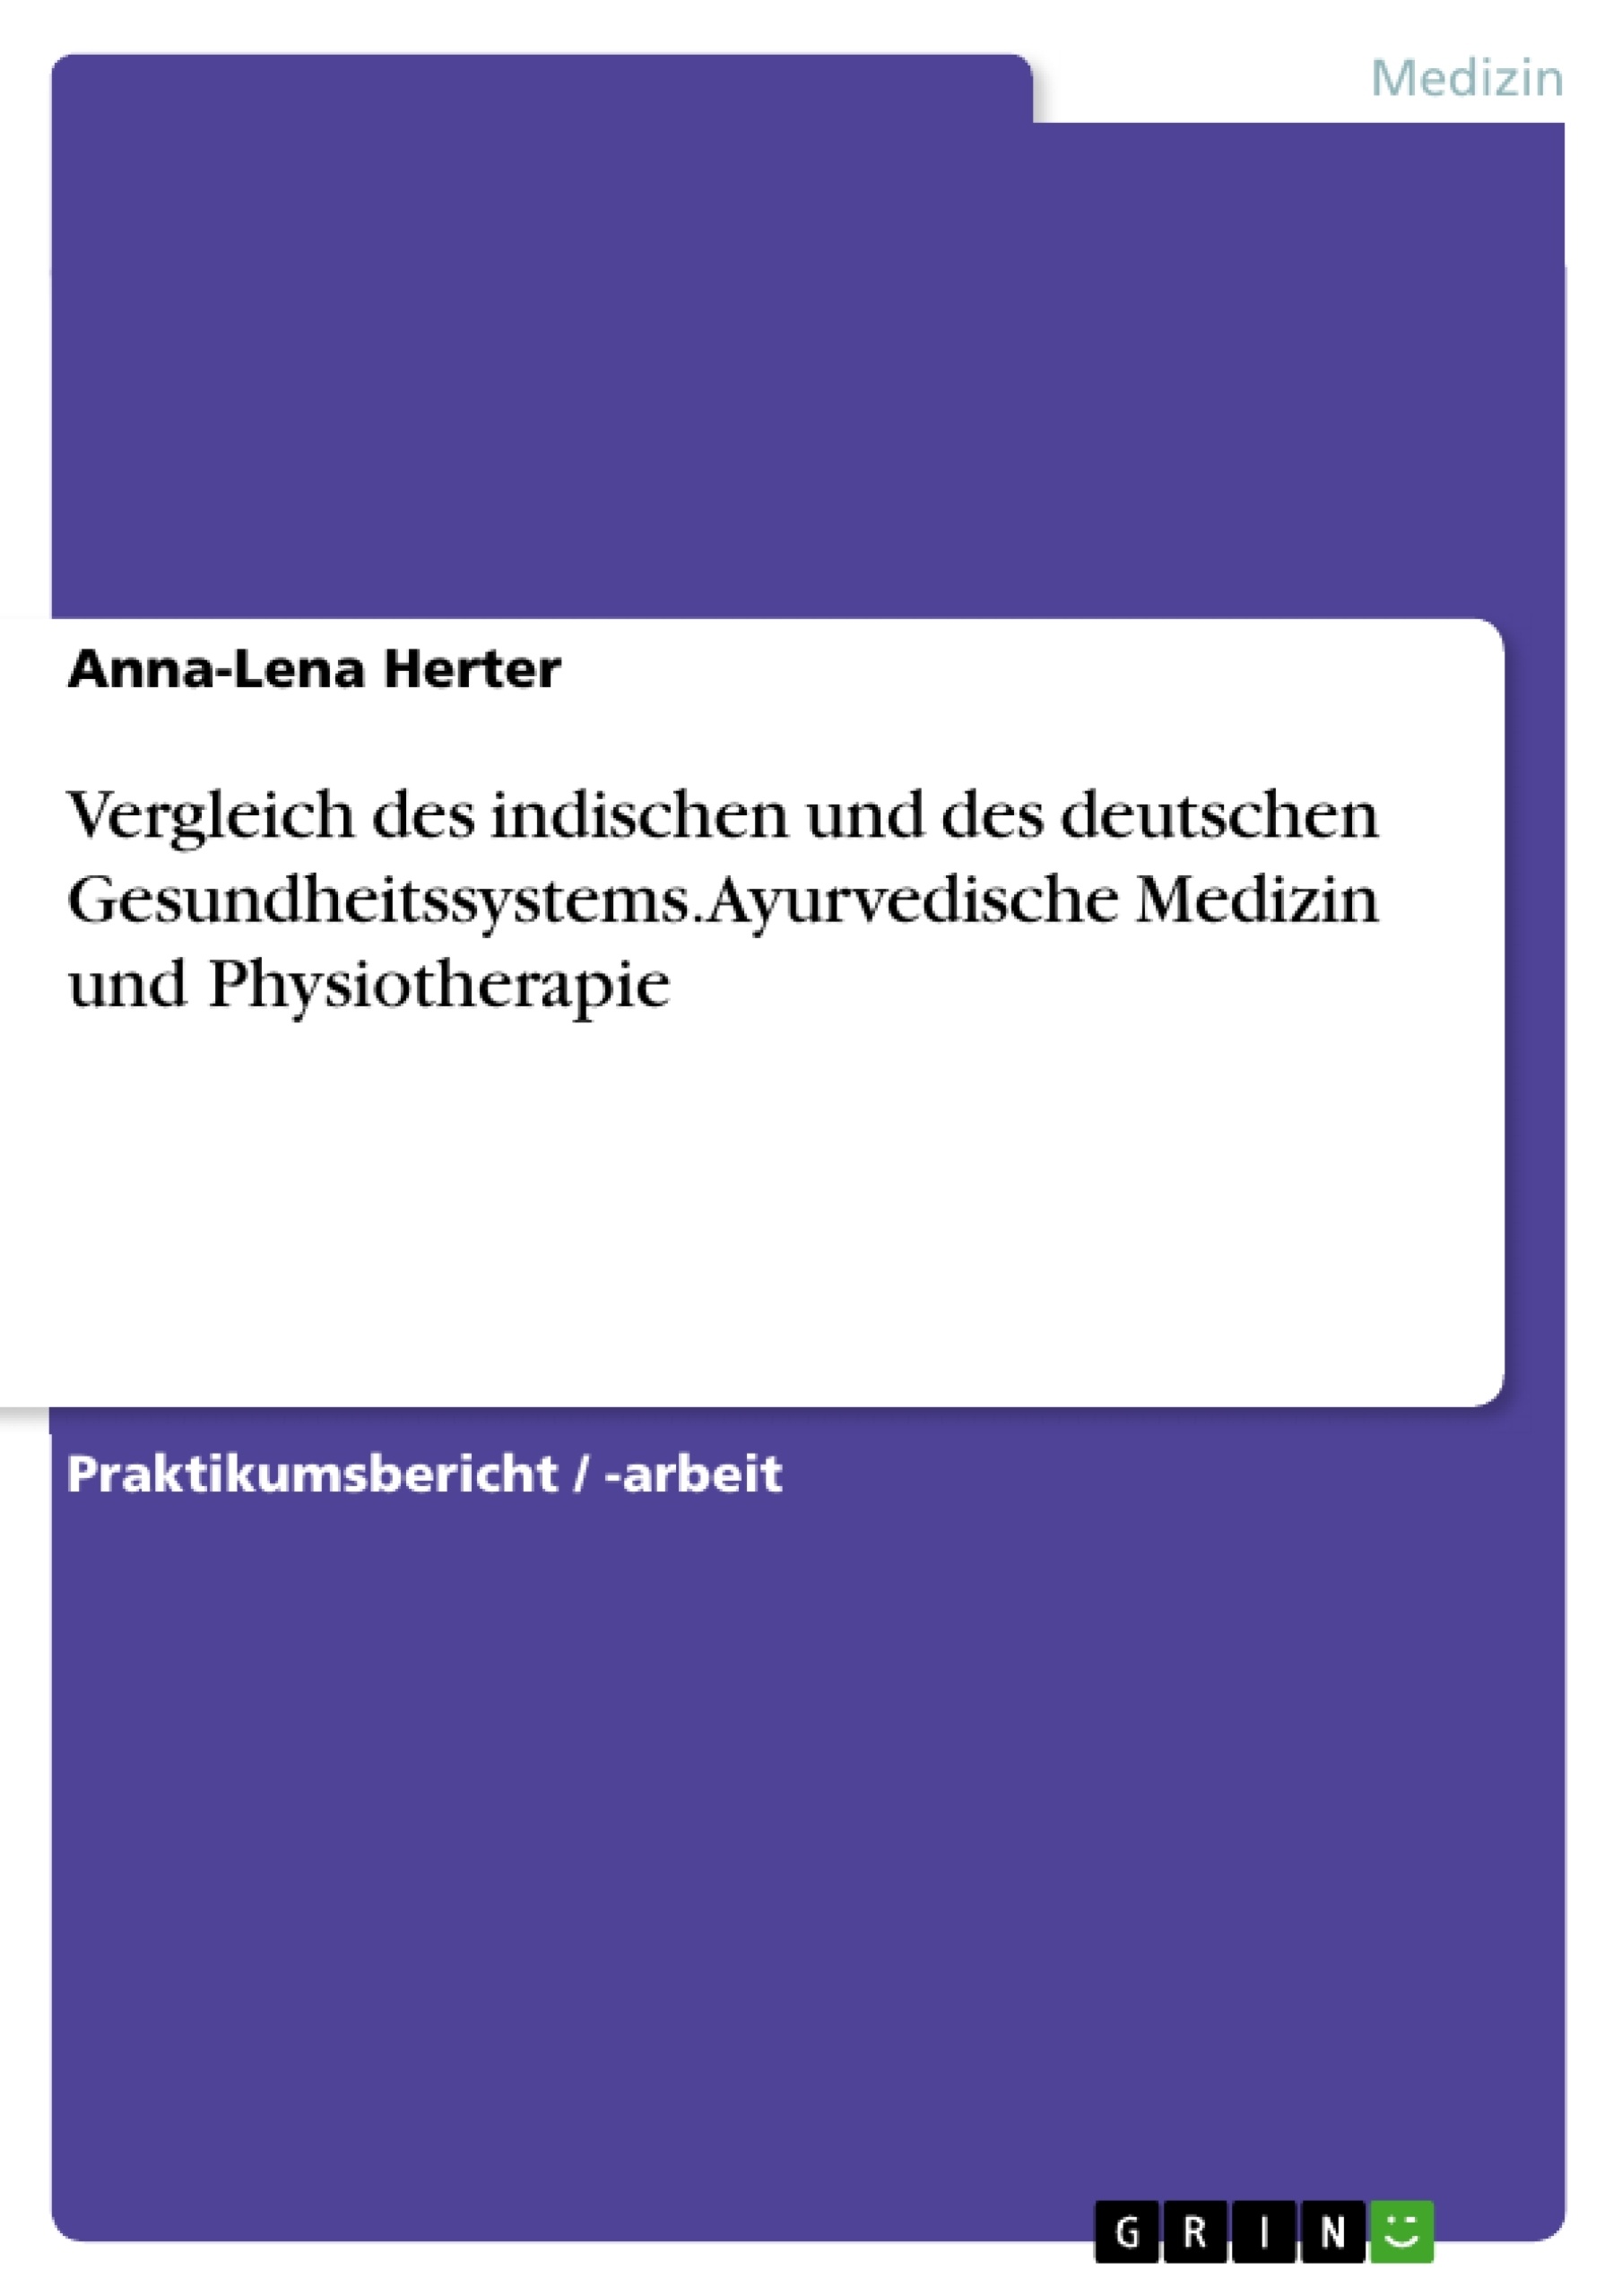 Título: Vergleich des indischen und des deutschen Gesundheitssystems. Ayurvedische Medizin und Physiotherapie